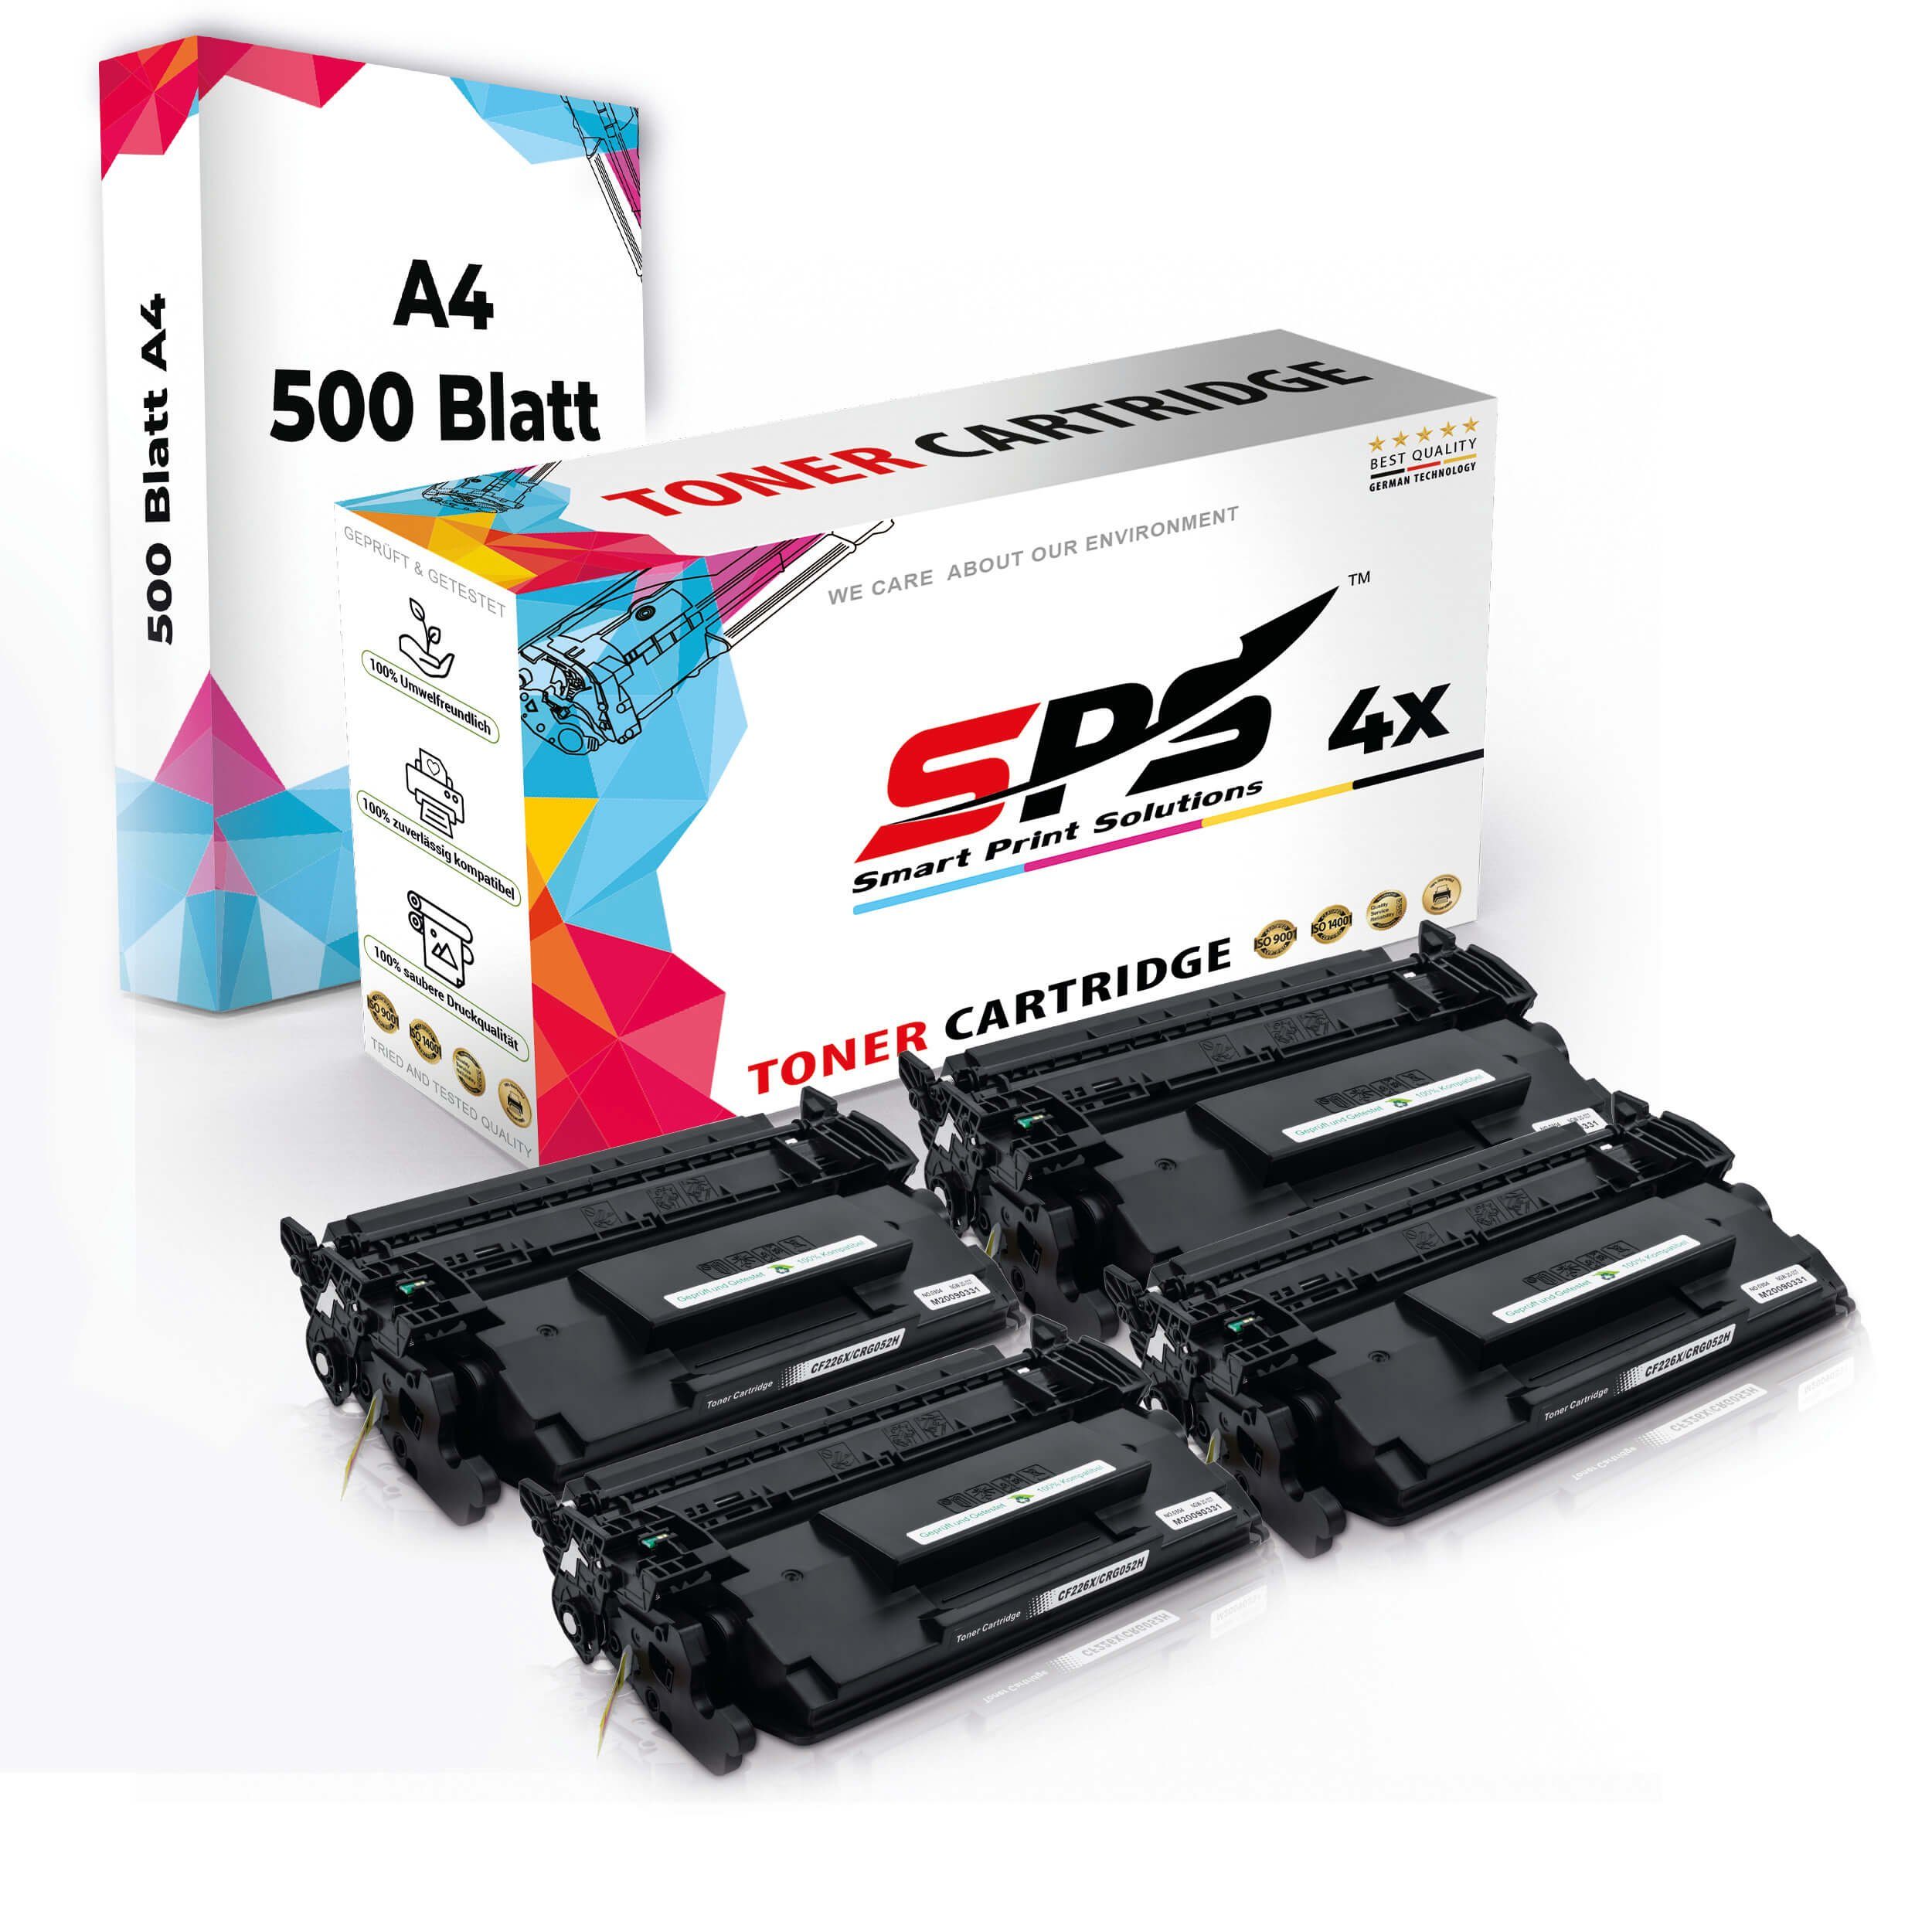 4x A4 4x Kompatibel, A4 Druckerpapier) Druckerpapier Pack, SPS + (5er Set Toner,1x Tonerkartusche Multipack